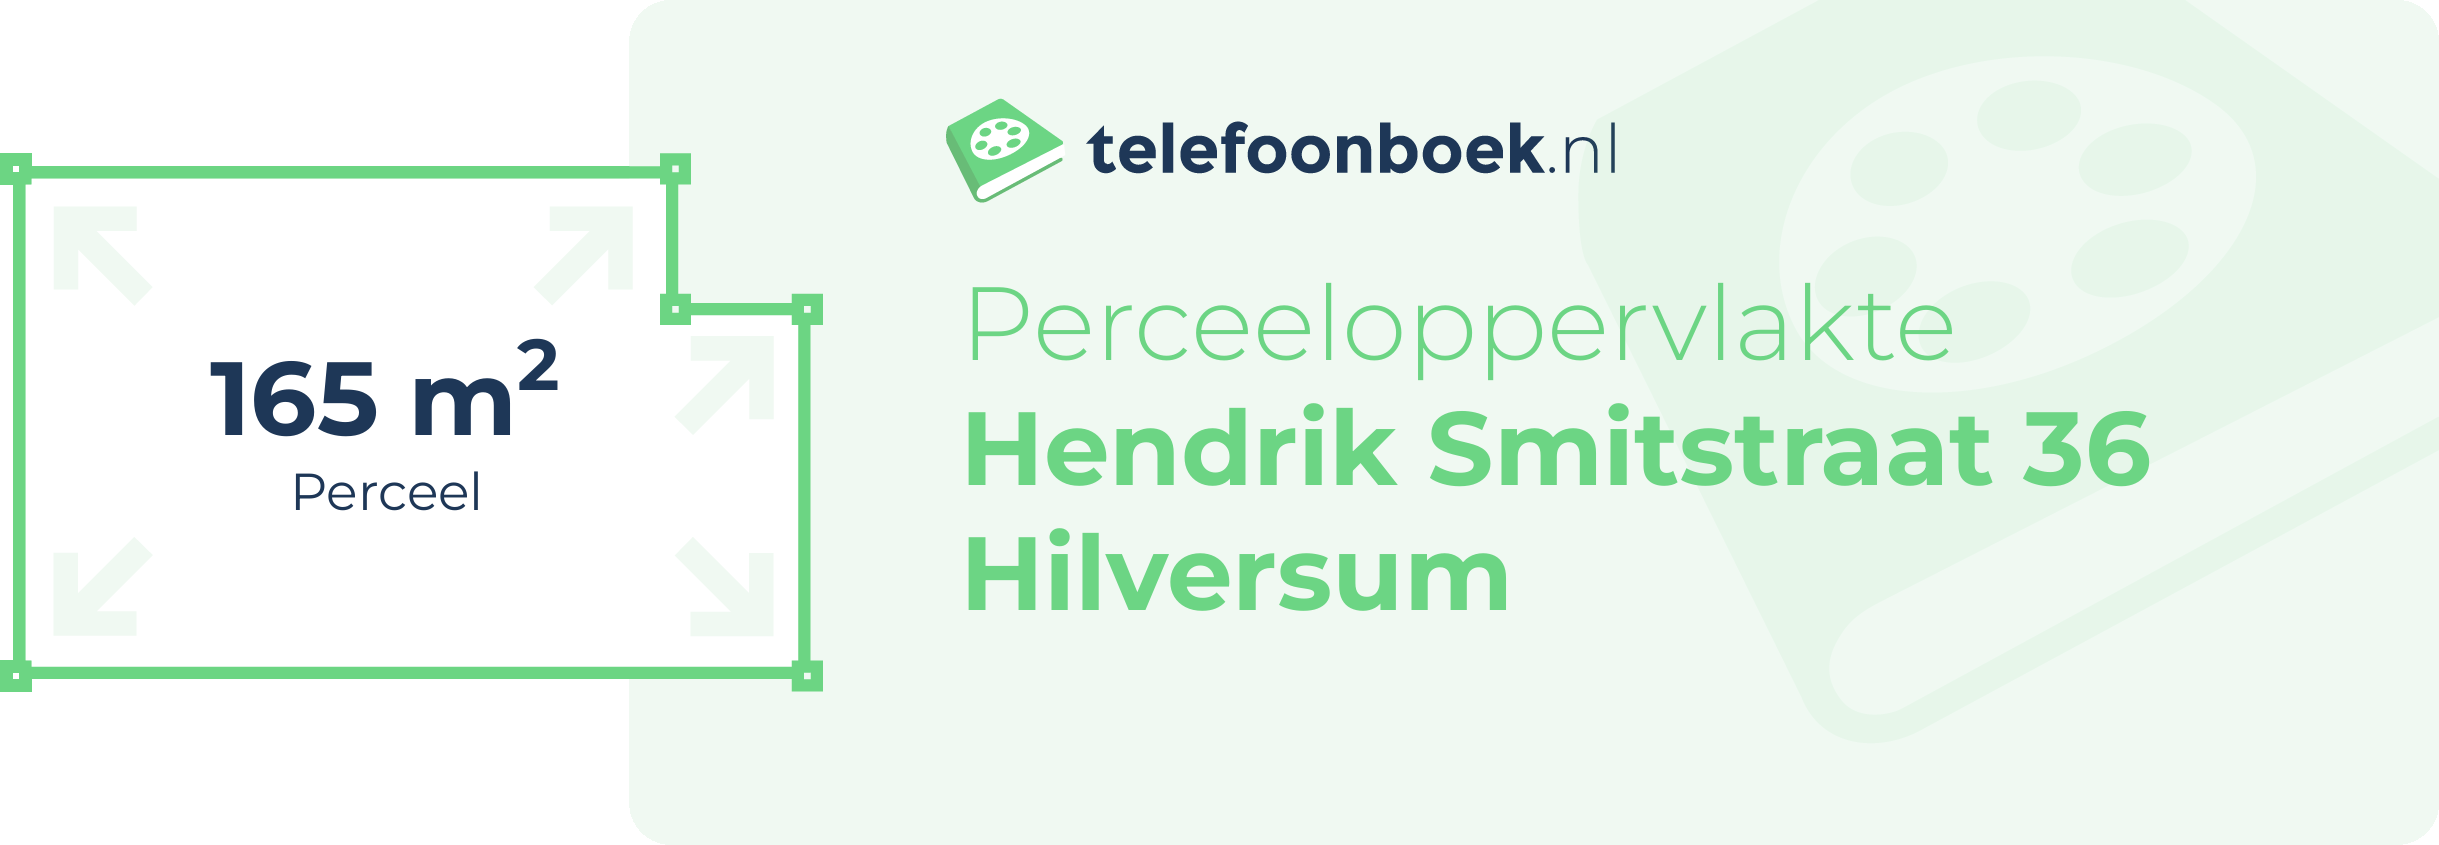 Perceeloppervlakte Hendrik Smitstraat 36 Hilversum